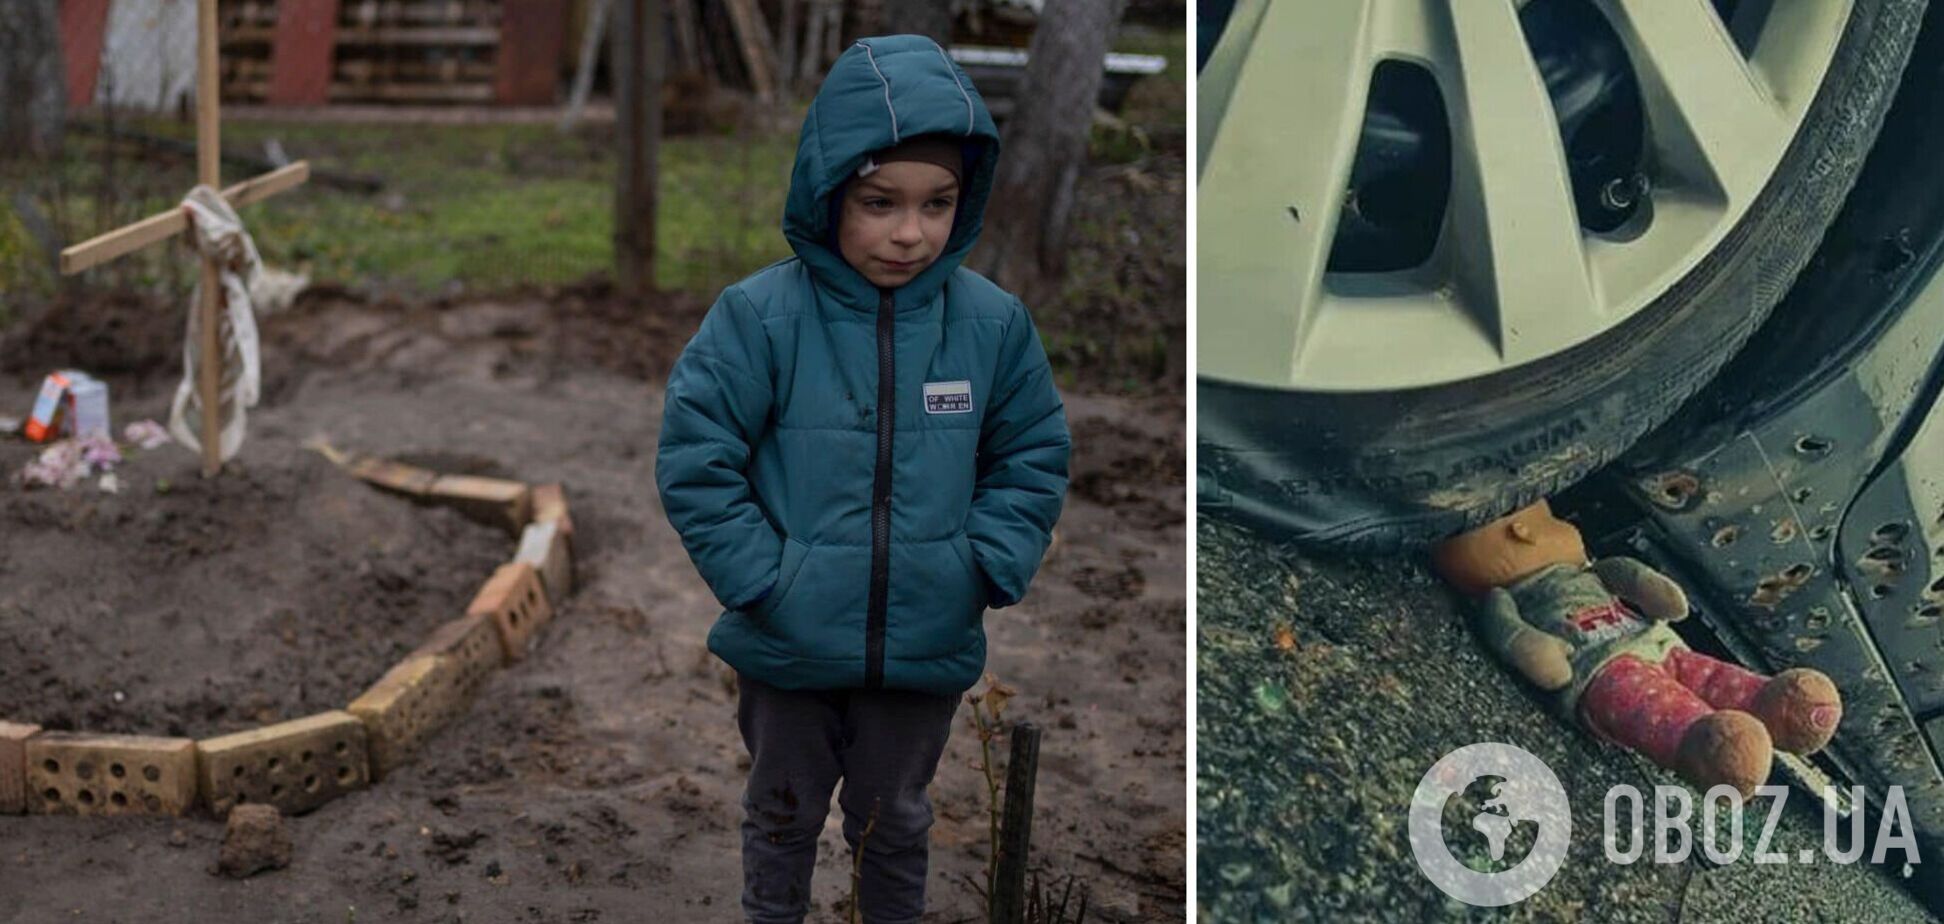 'Как может существовать такое зло?' Фото ребенка возле могилы матери на Киевщине потрясло сеть